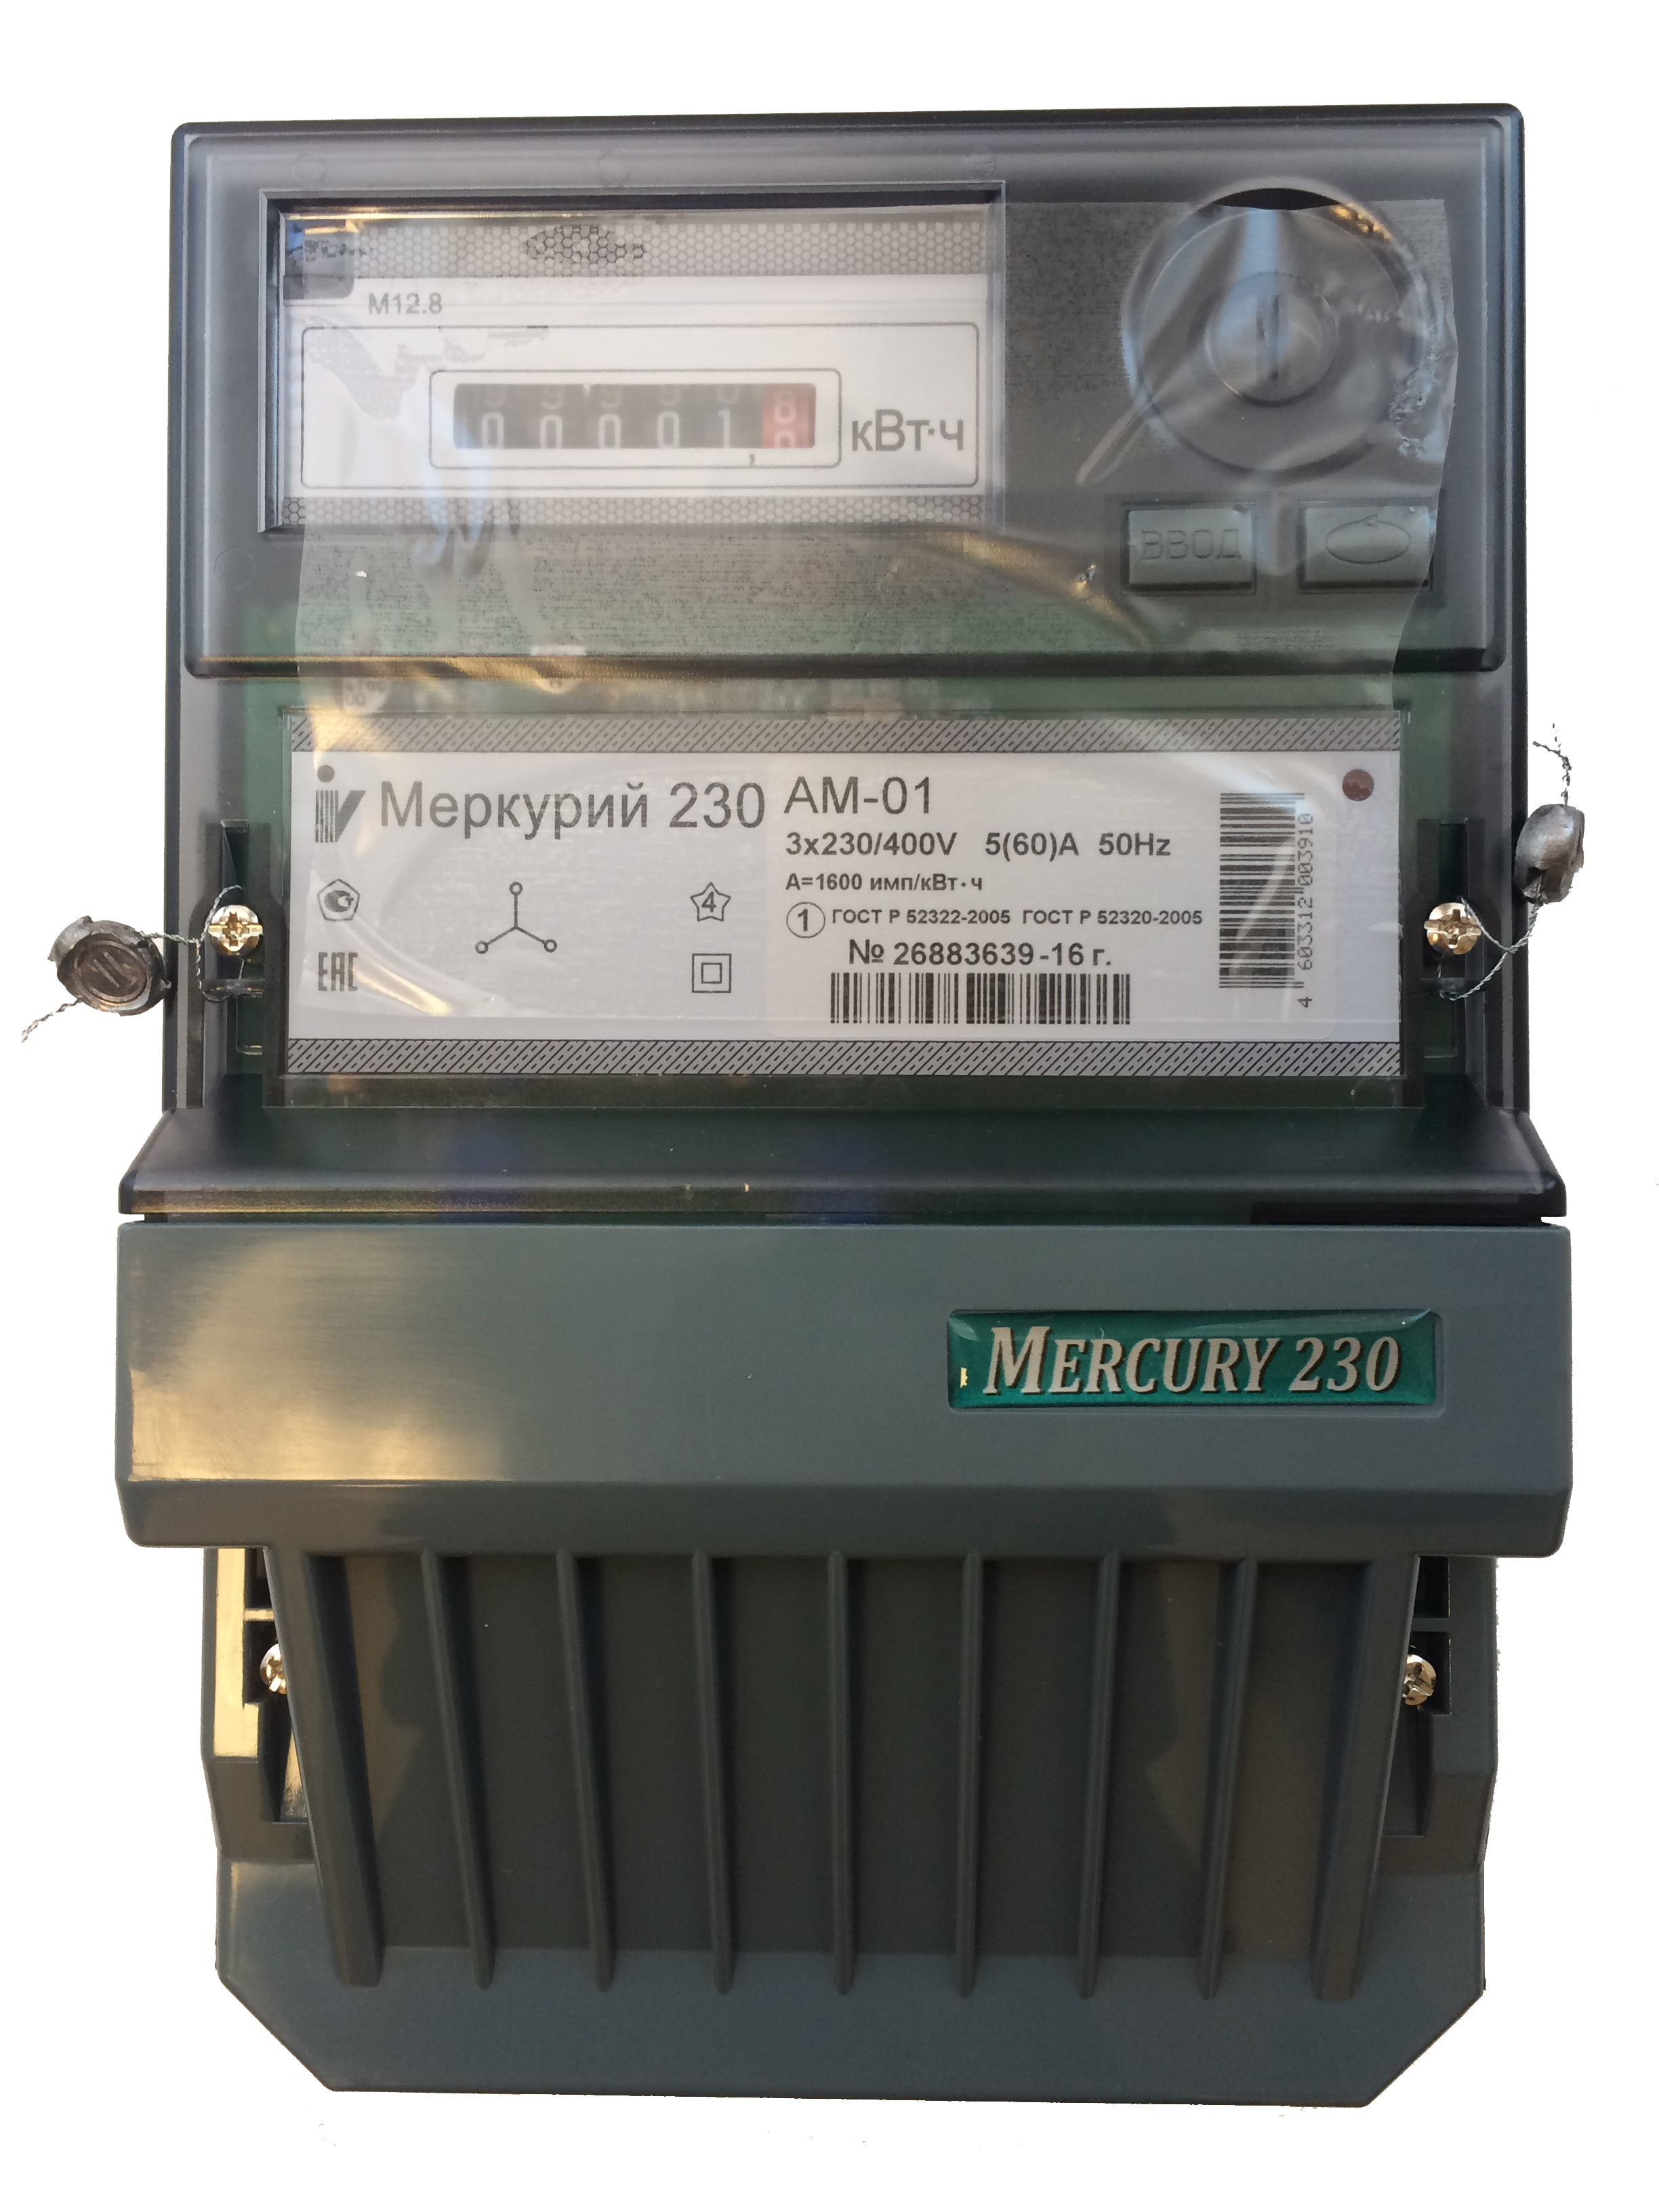 Где Купить Электросчетчик В Нижнем Новгороде